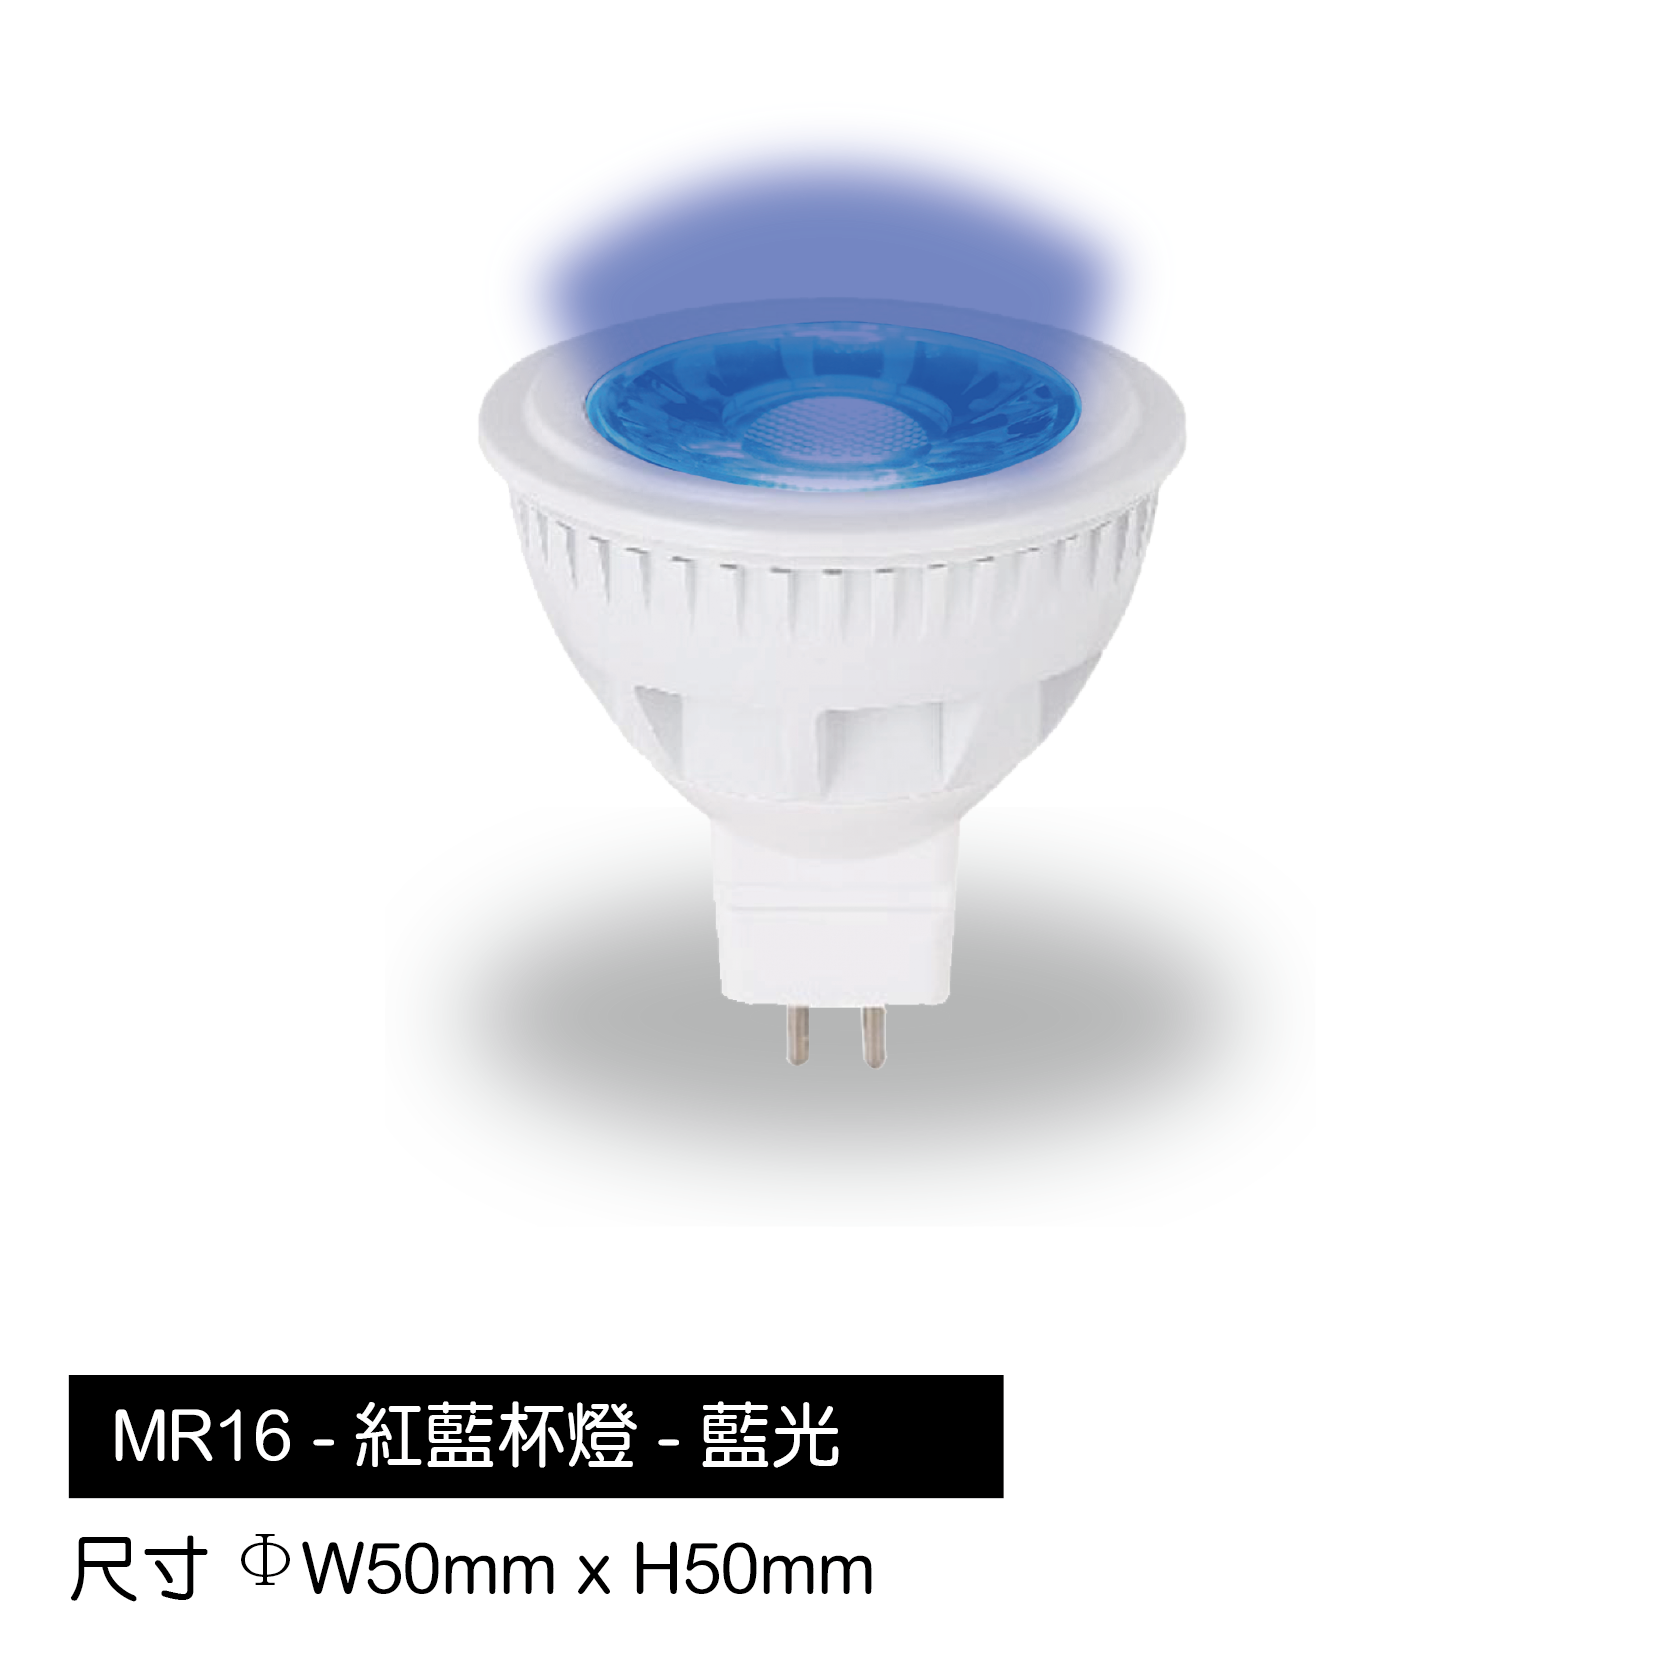 MR16-藍杯燈